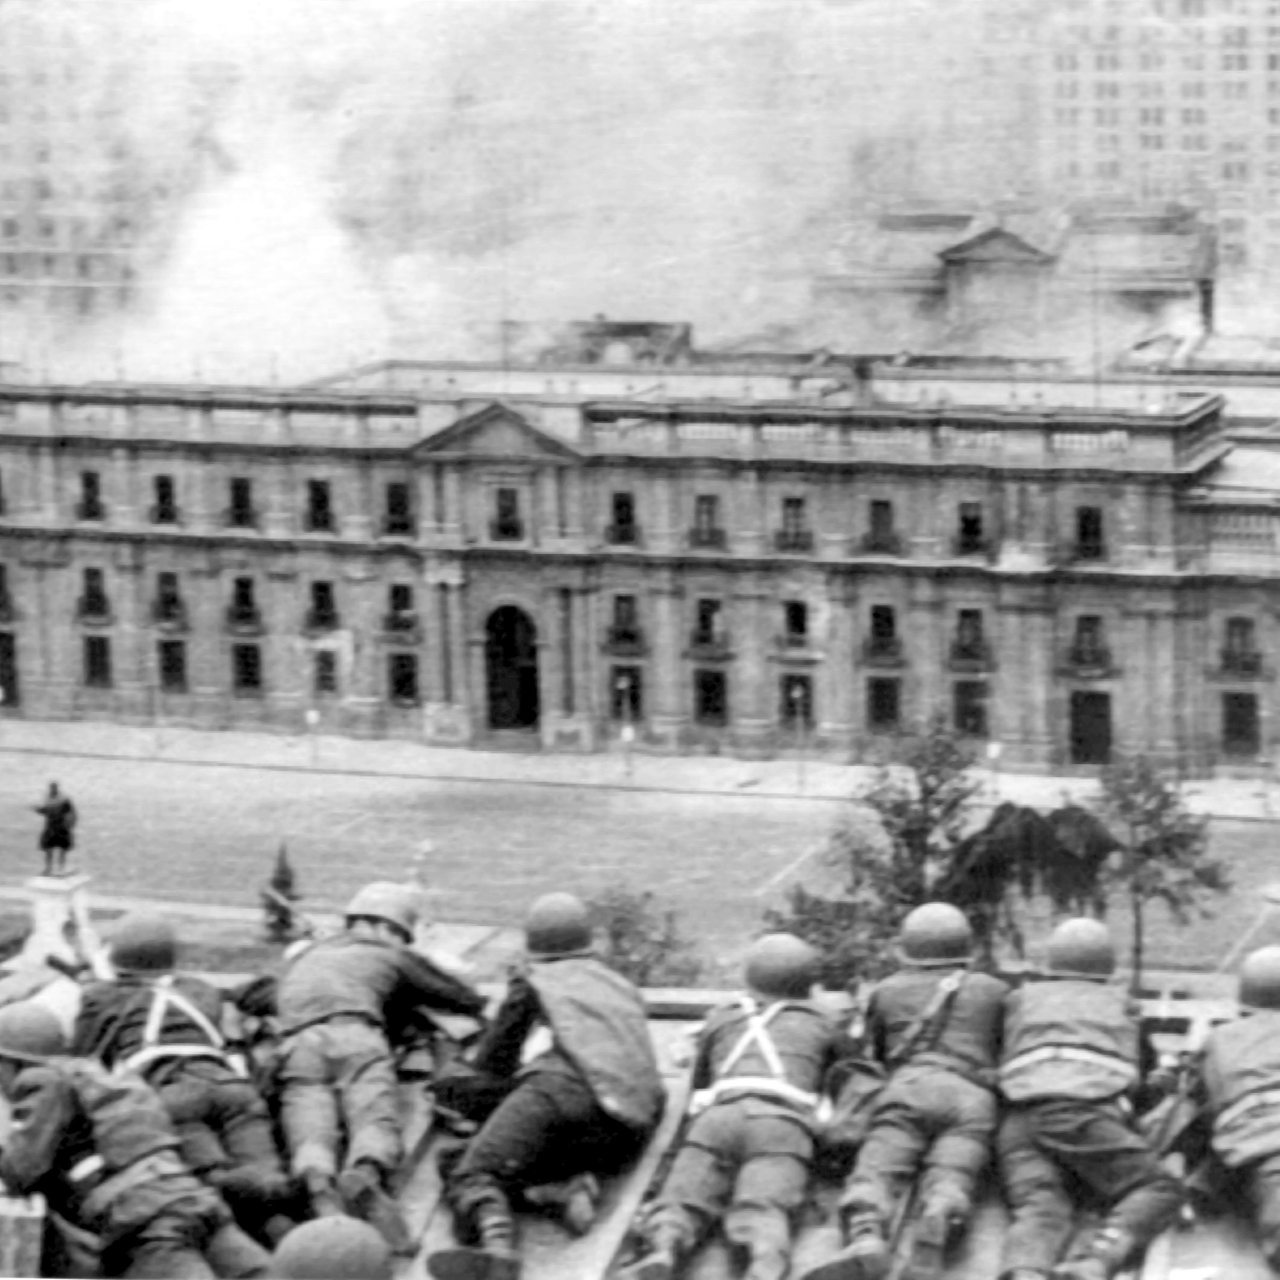 Einheiten der putschenden Militärs feuern vom Dach eines gegenüberstehenden Gebäudes auf den Palast. Bei der Erstürmung des Moneda-Palastes in der chilenischen Hauptstadt Santiago de Chile